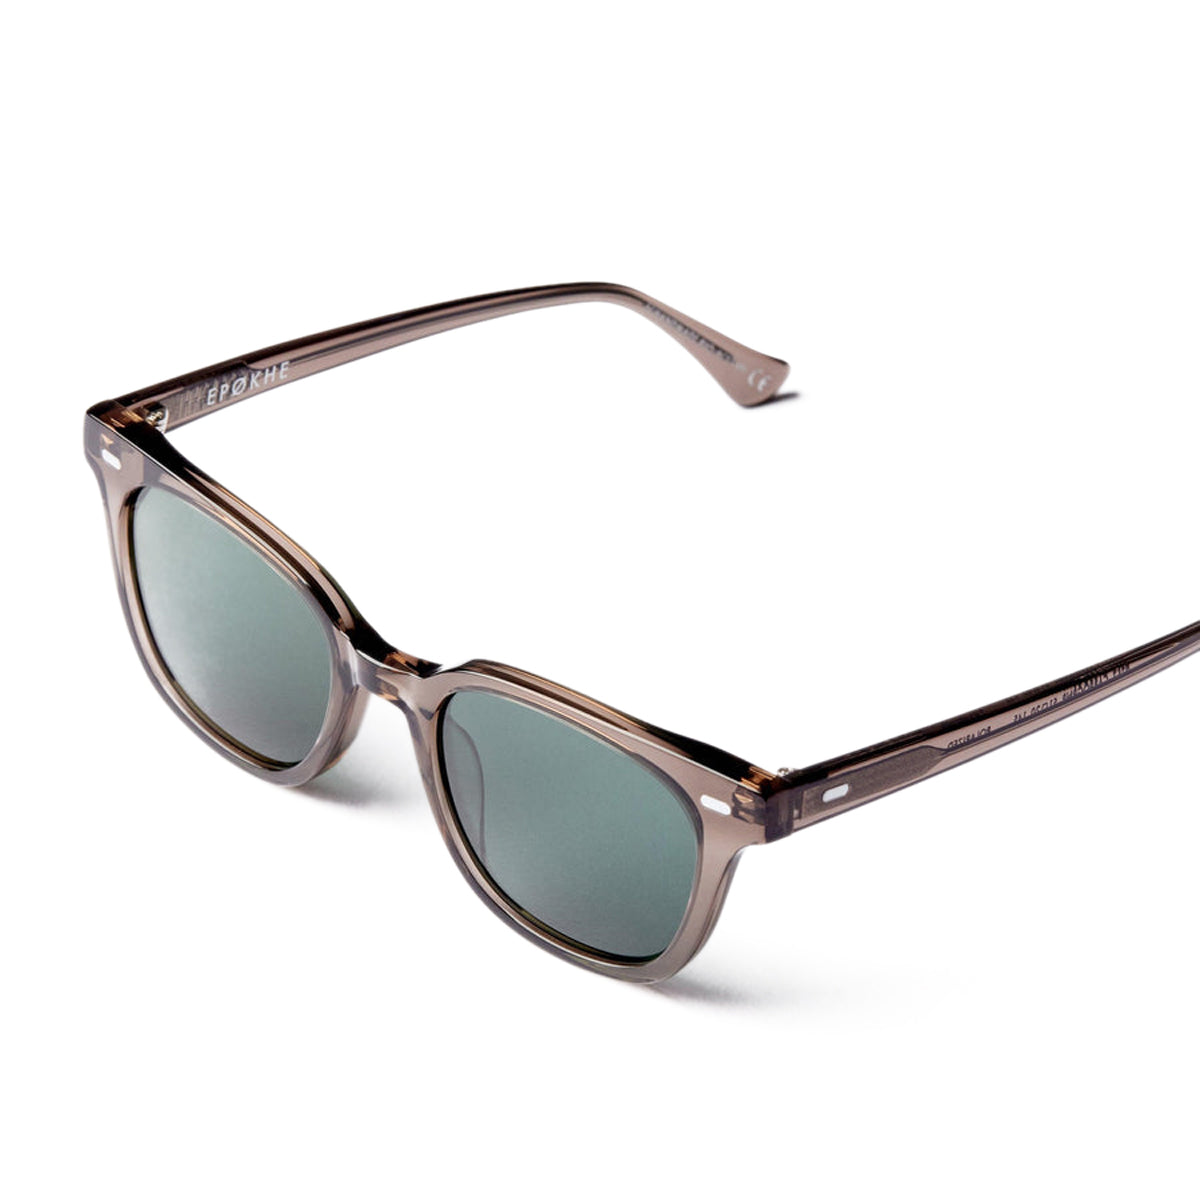 Epokhe Kino Sunglasses - Carbon Polished/Green Polarized image 3